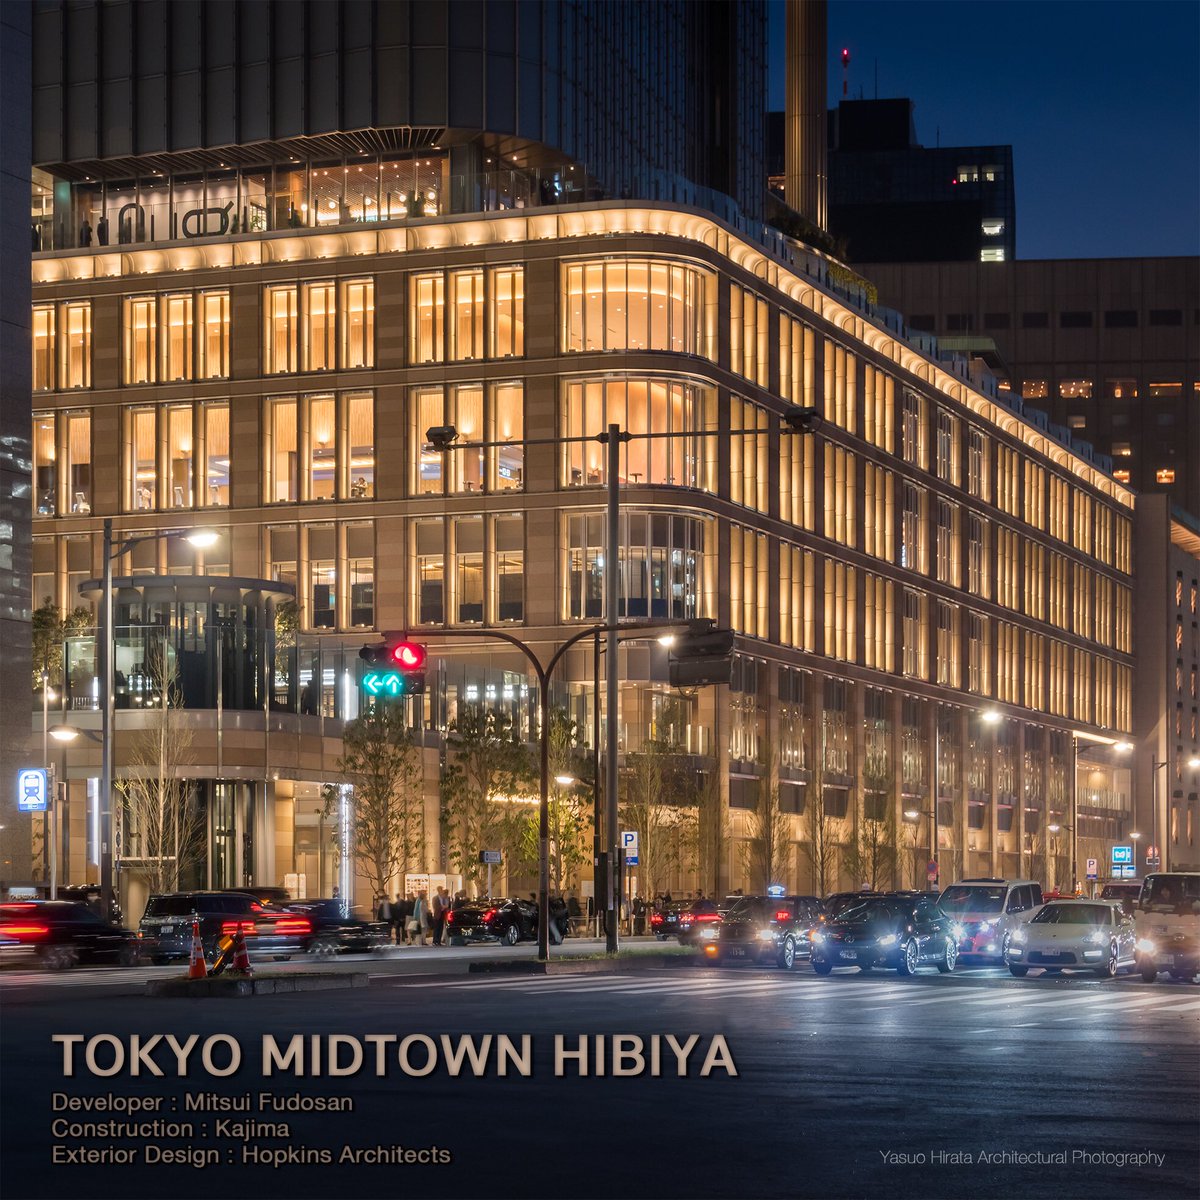 TOKYO MIDTOWN HIBIYA
Developer : Mitsui Fudosan
Construction : Kajima
Exterior Design : Hopkins Architects
#architecture #architecturephotography #tokyoarchitecture #東京ミッドタウン日比谷
#tokyomidtownhibiya